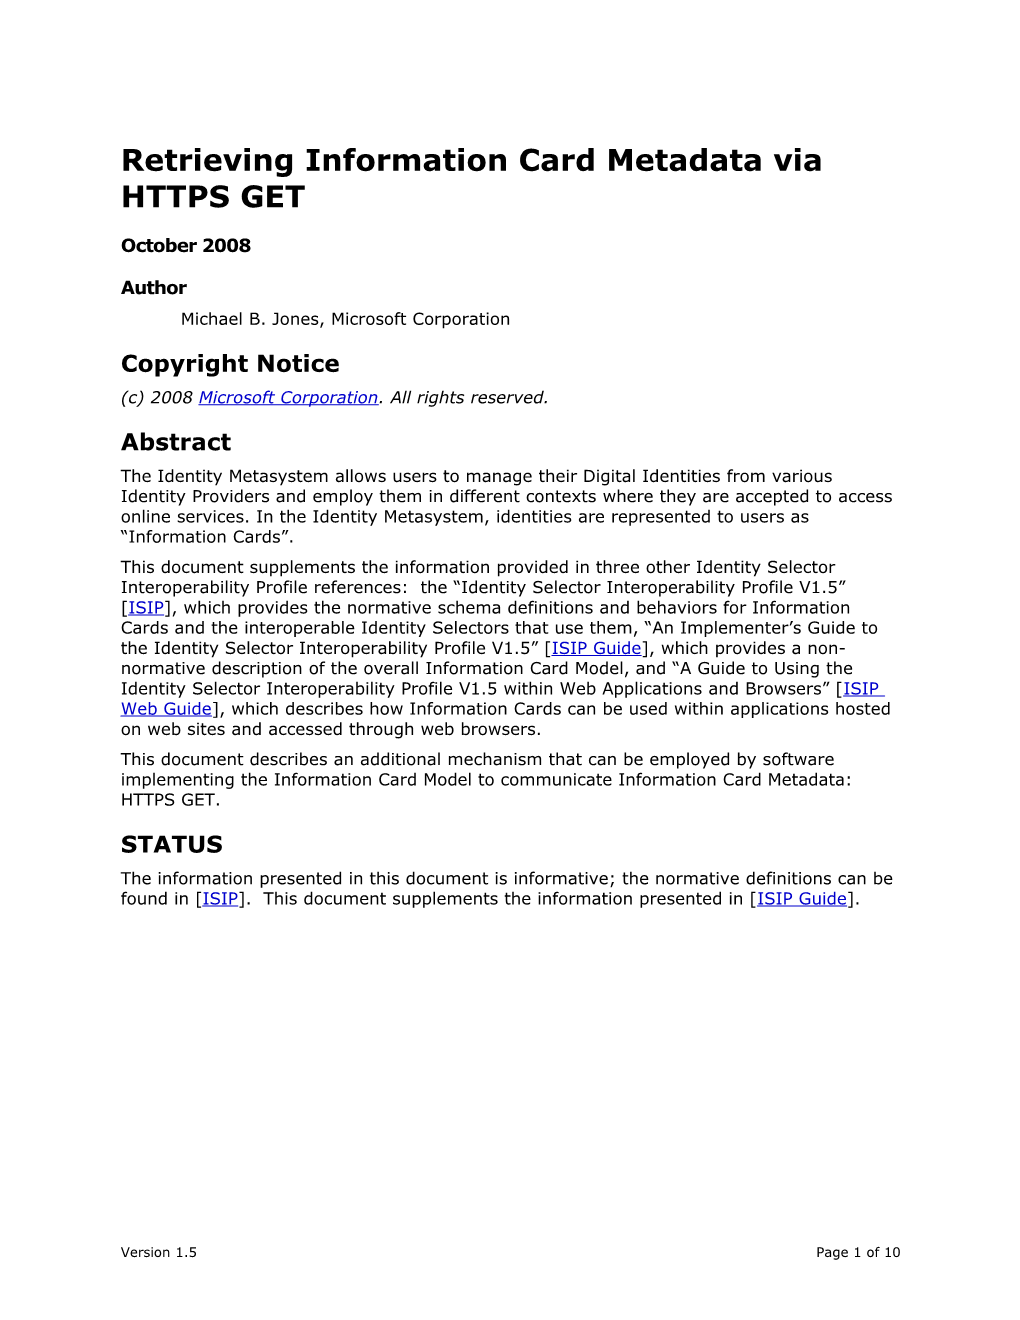 Retrieving Information Card Metadata Via HTTPS GET